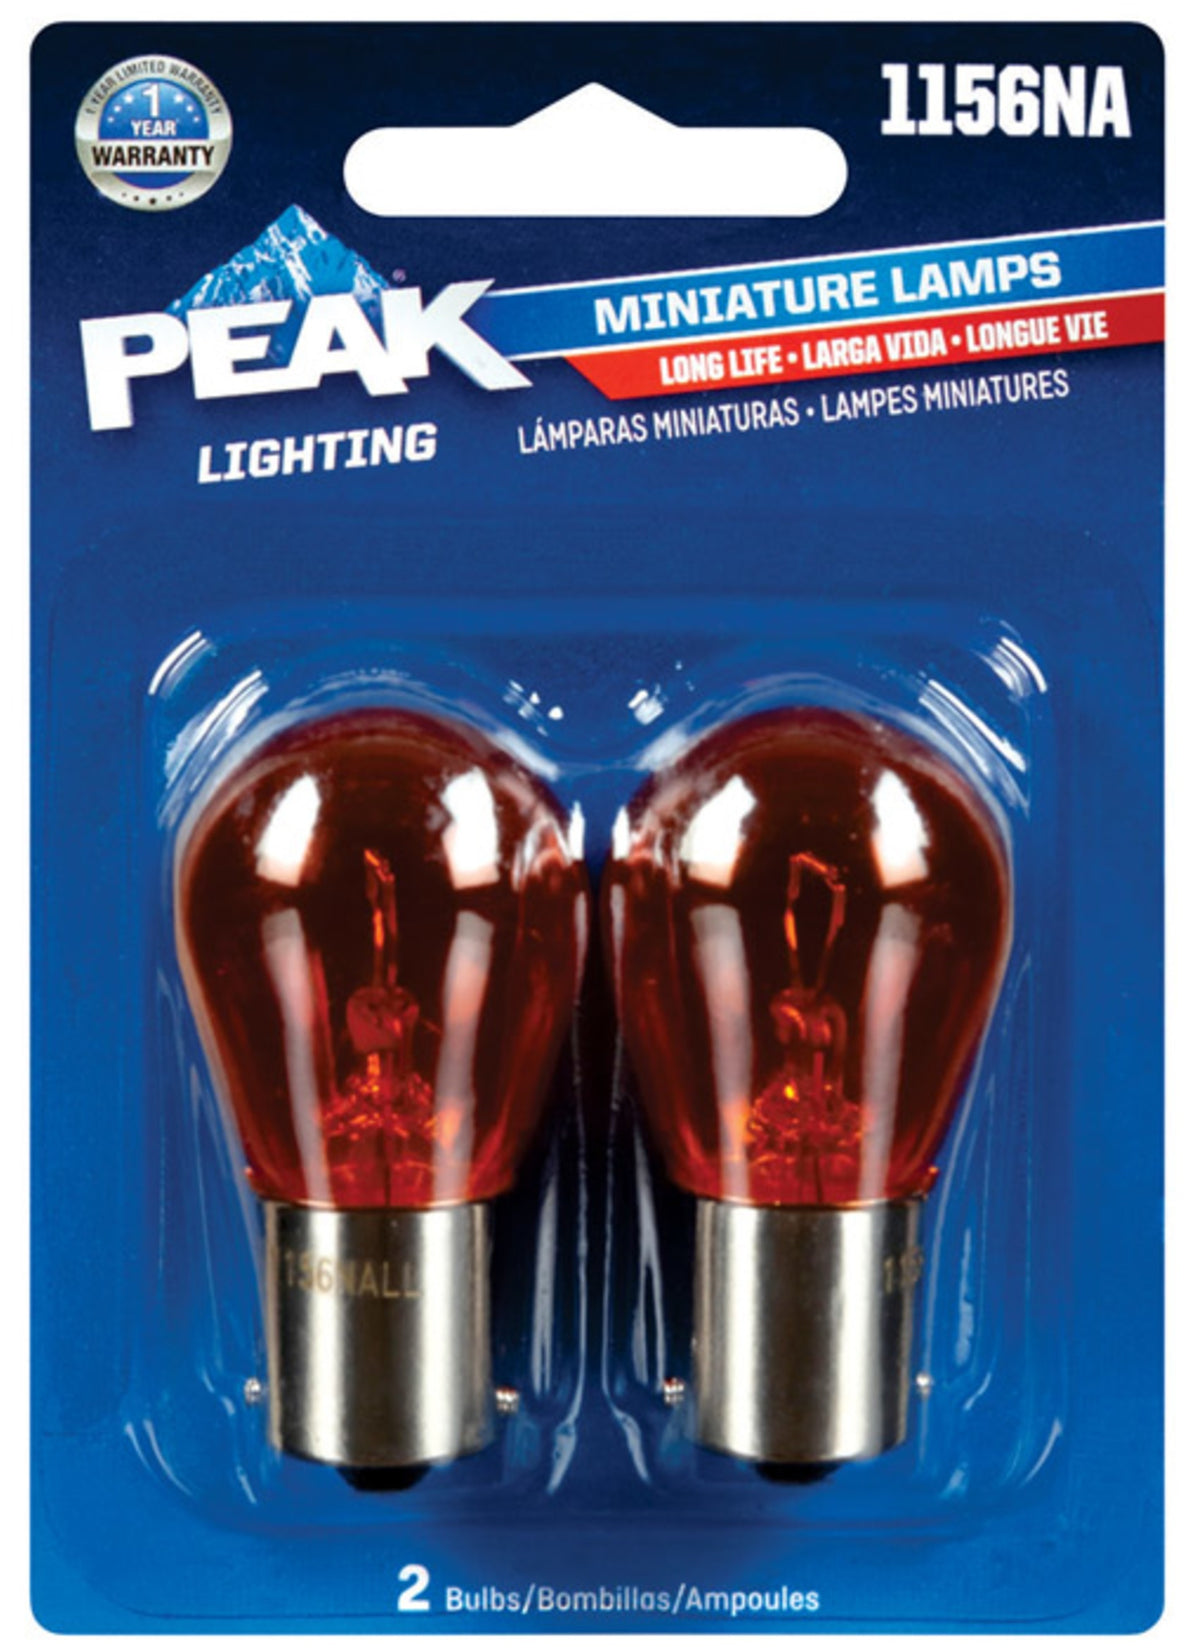 Peak 1156NALL-BPP Miniature Automotive Bulbs, 12.8 Volts